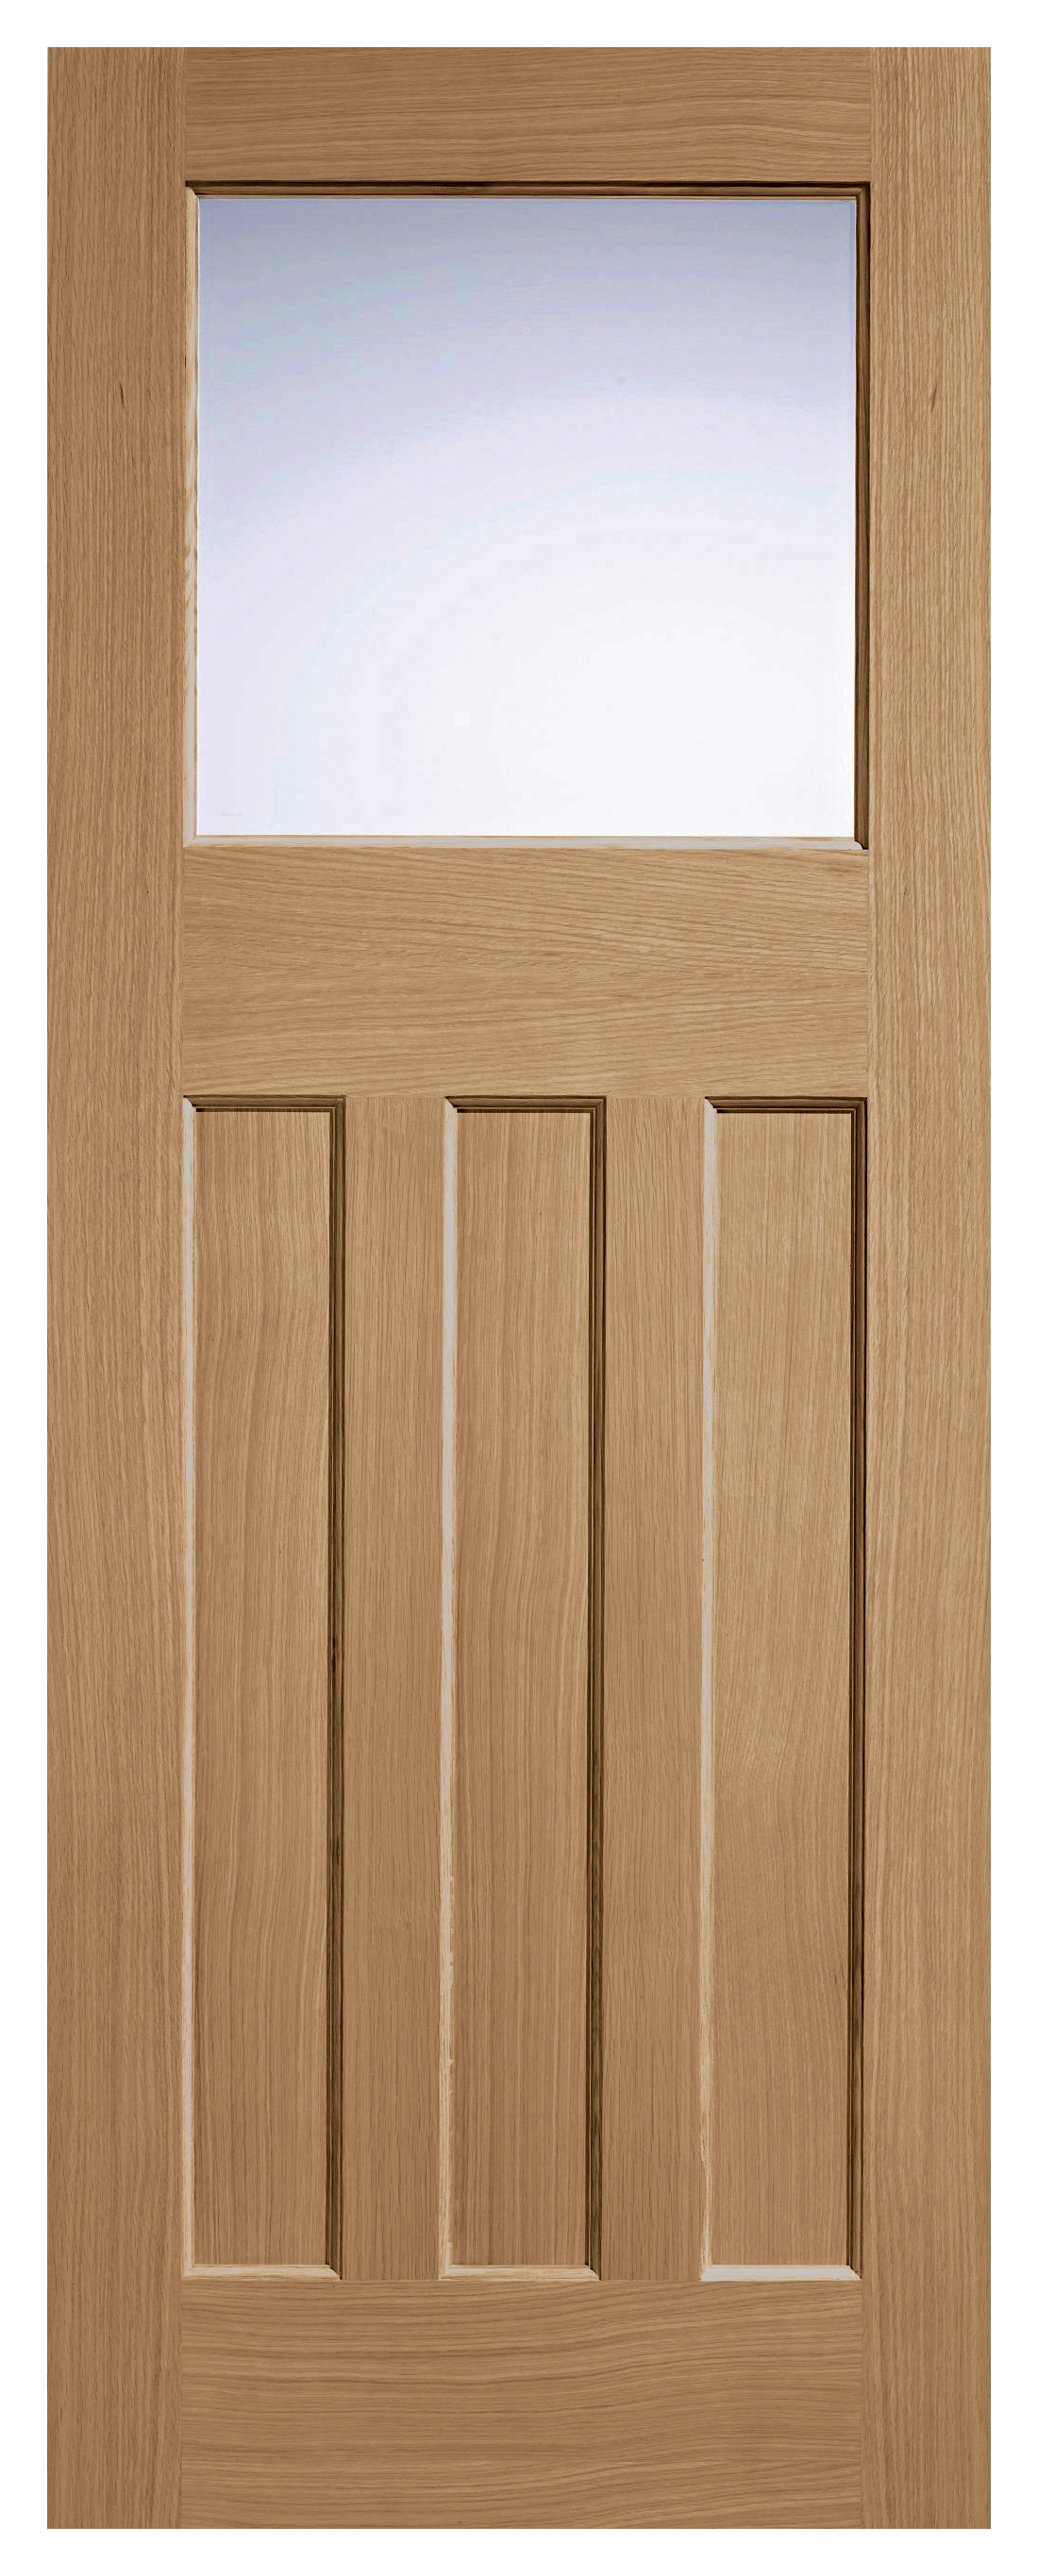 Image of LPD Internal 1 Lite DX 30s Unfinished Oak Solid Core Door - 813 x 2032mm